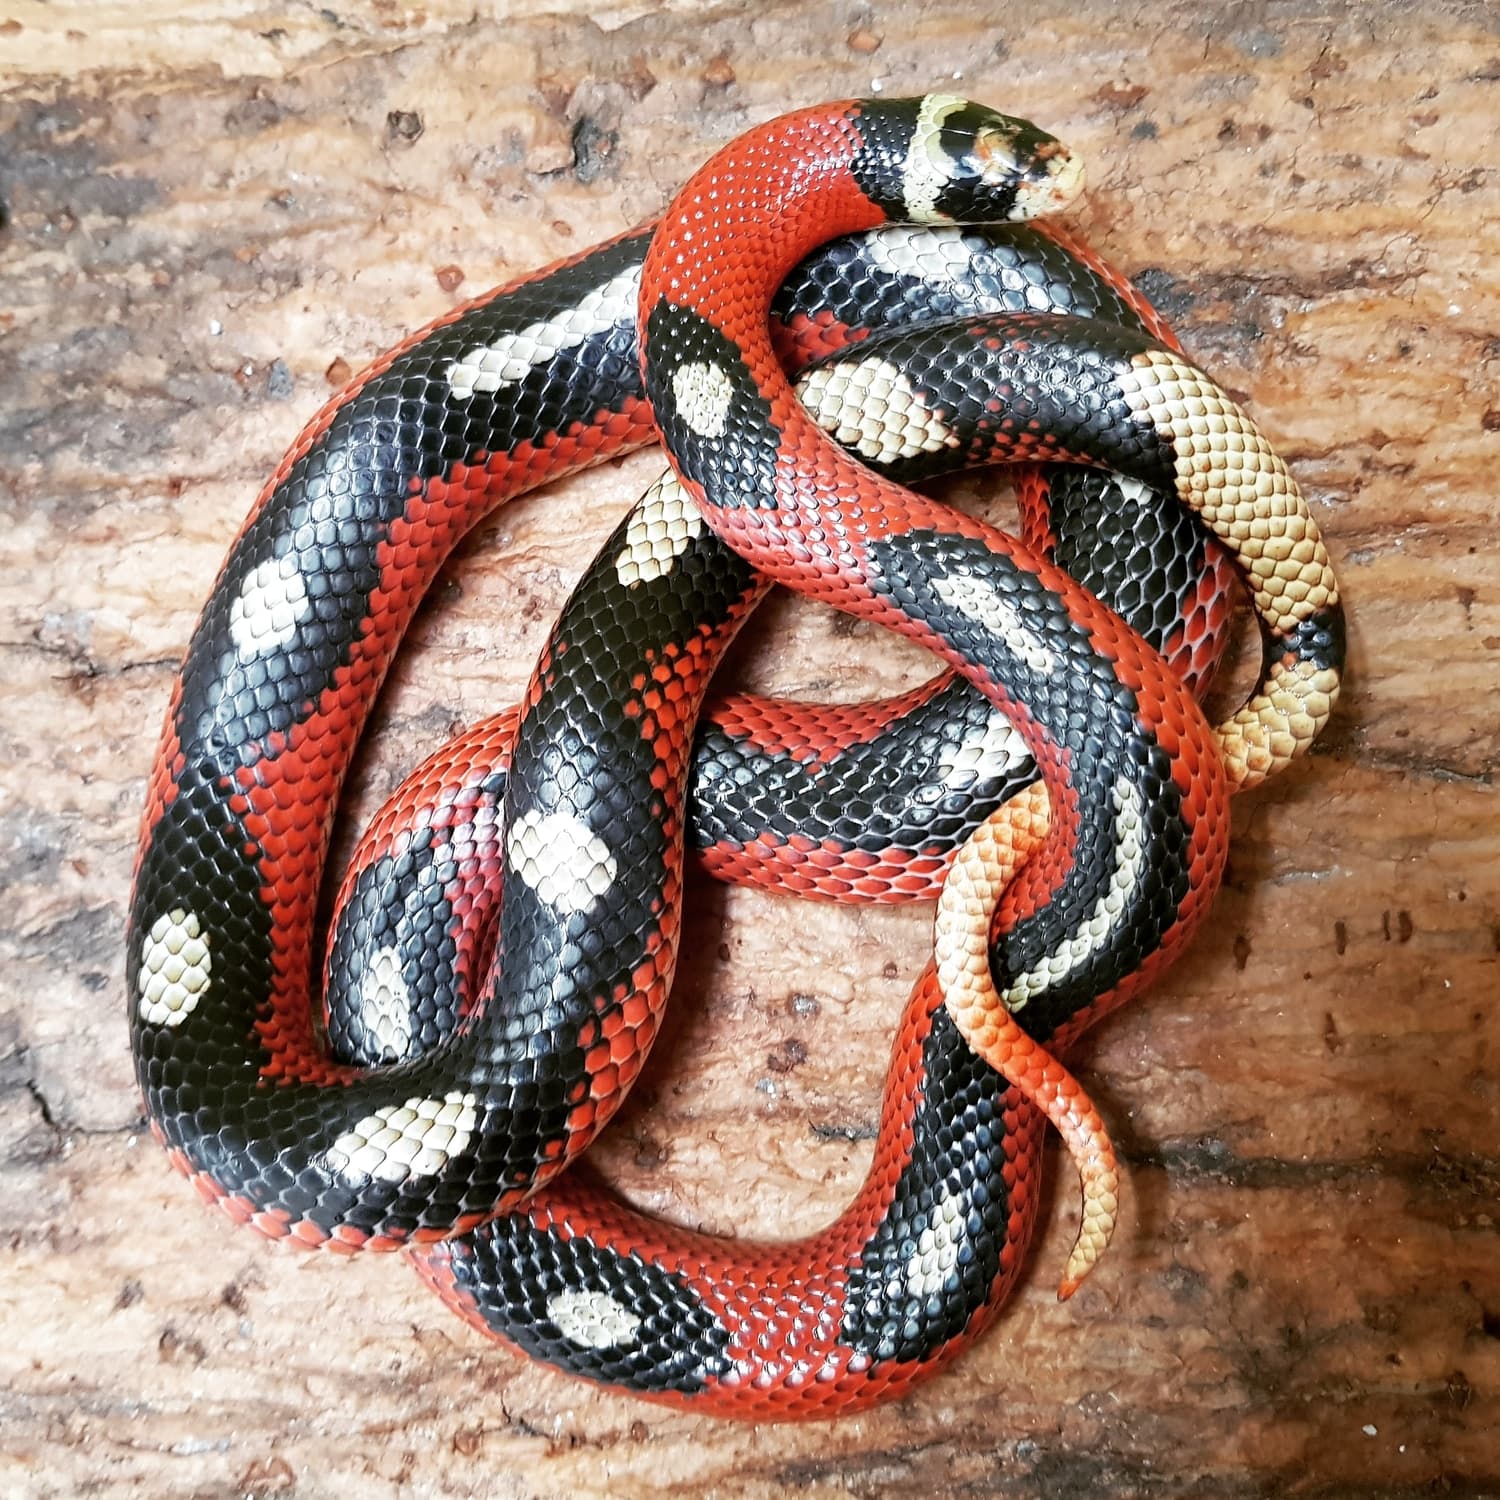 Splotched/striped Sinaloan Milk Snake by Snakeria